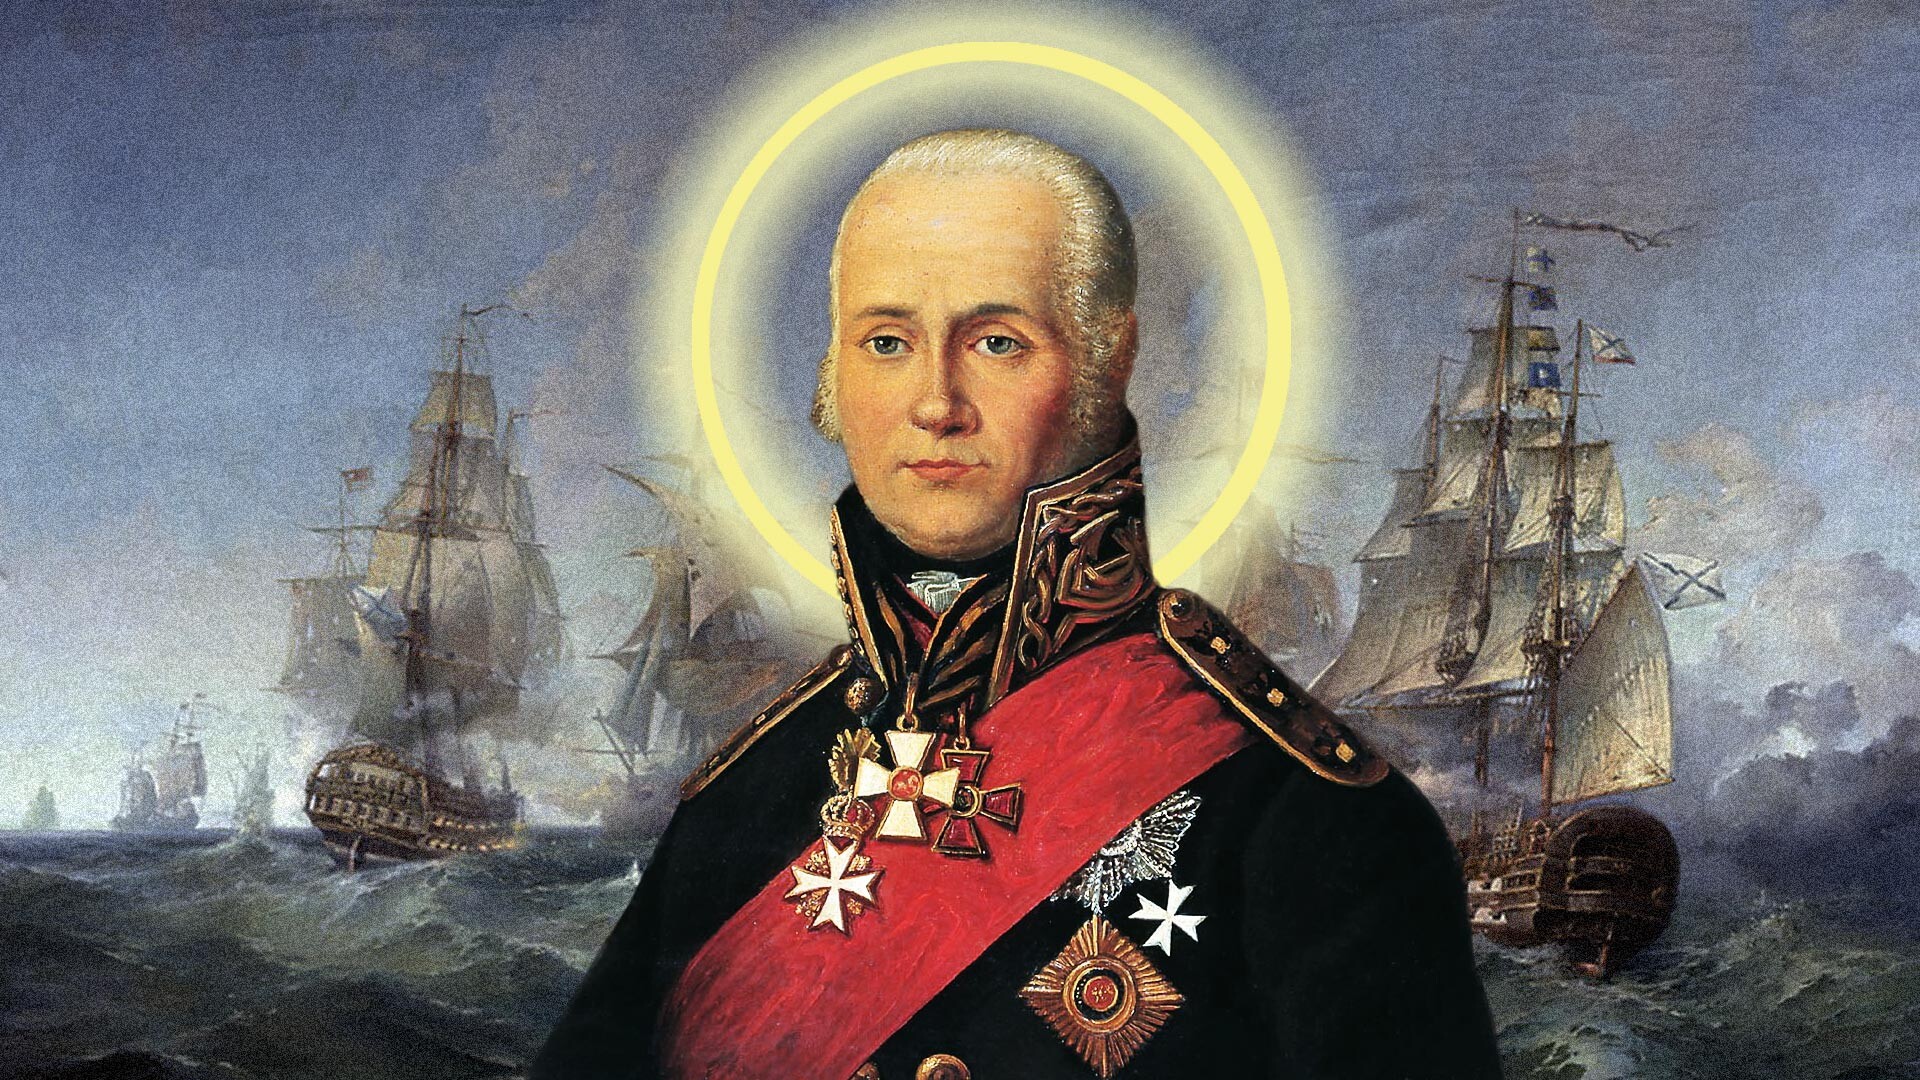 Đô đốc Nga duy nhất được phong Thánh, chưa từng để mất một tàu chiến - 1